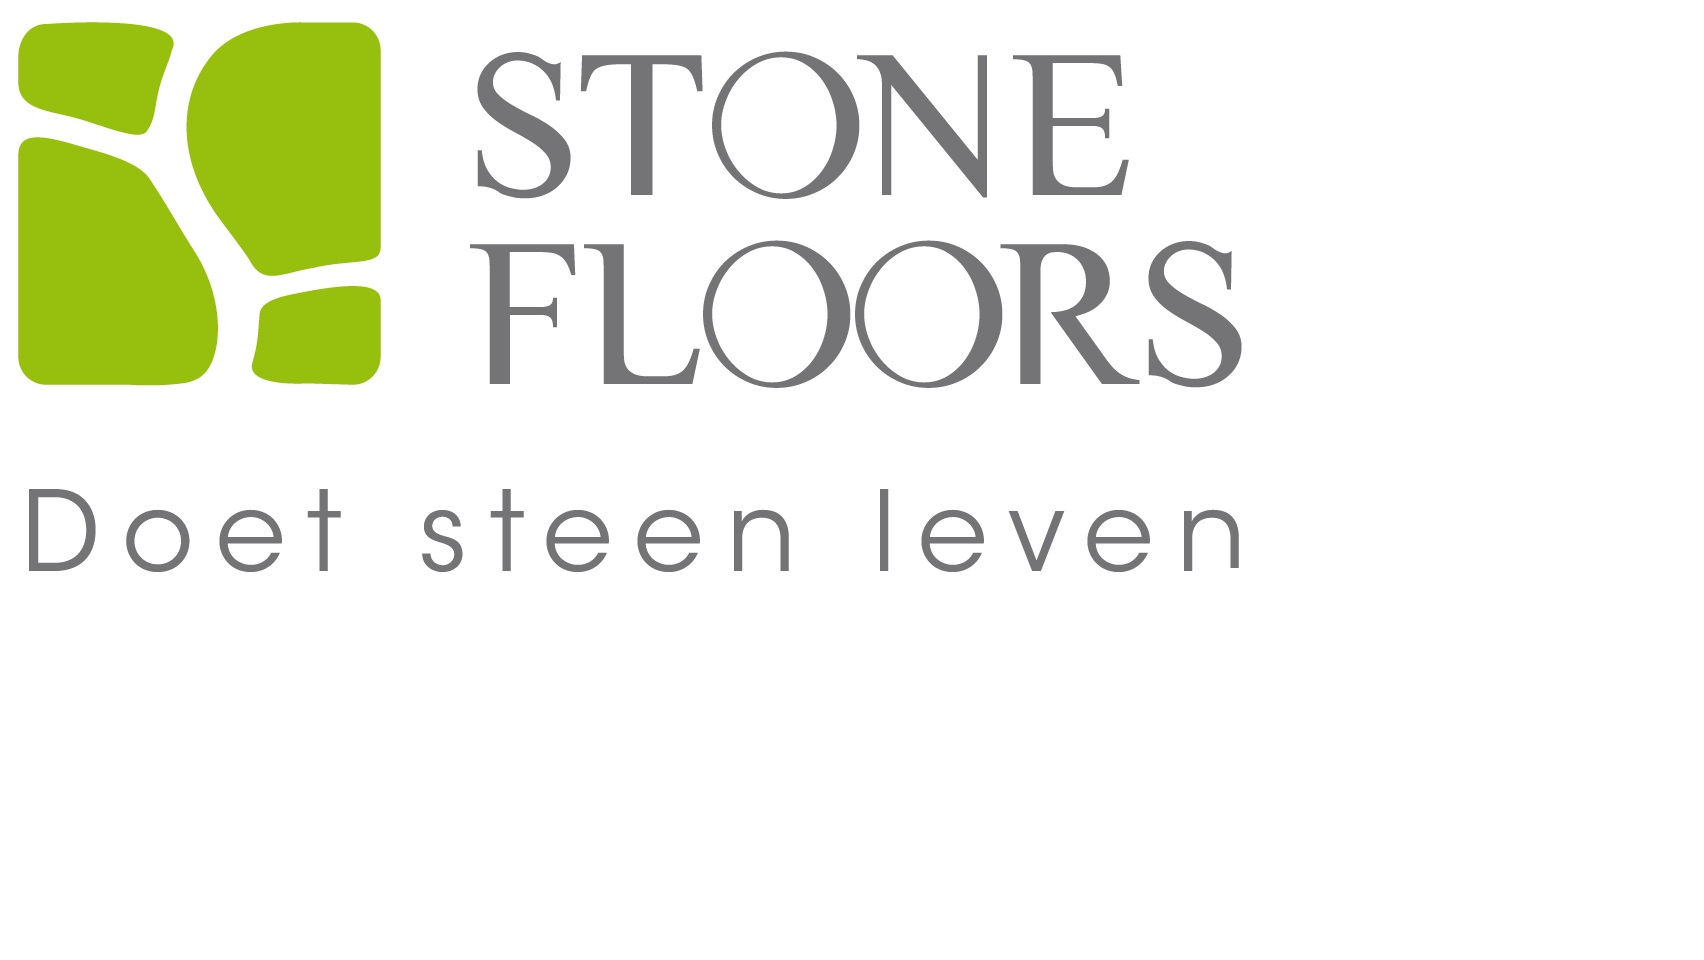 Stone floors doet steen leven 